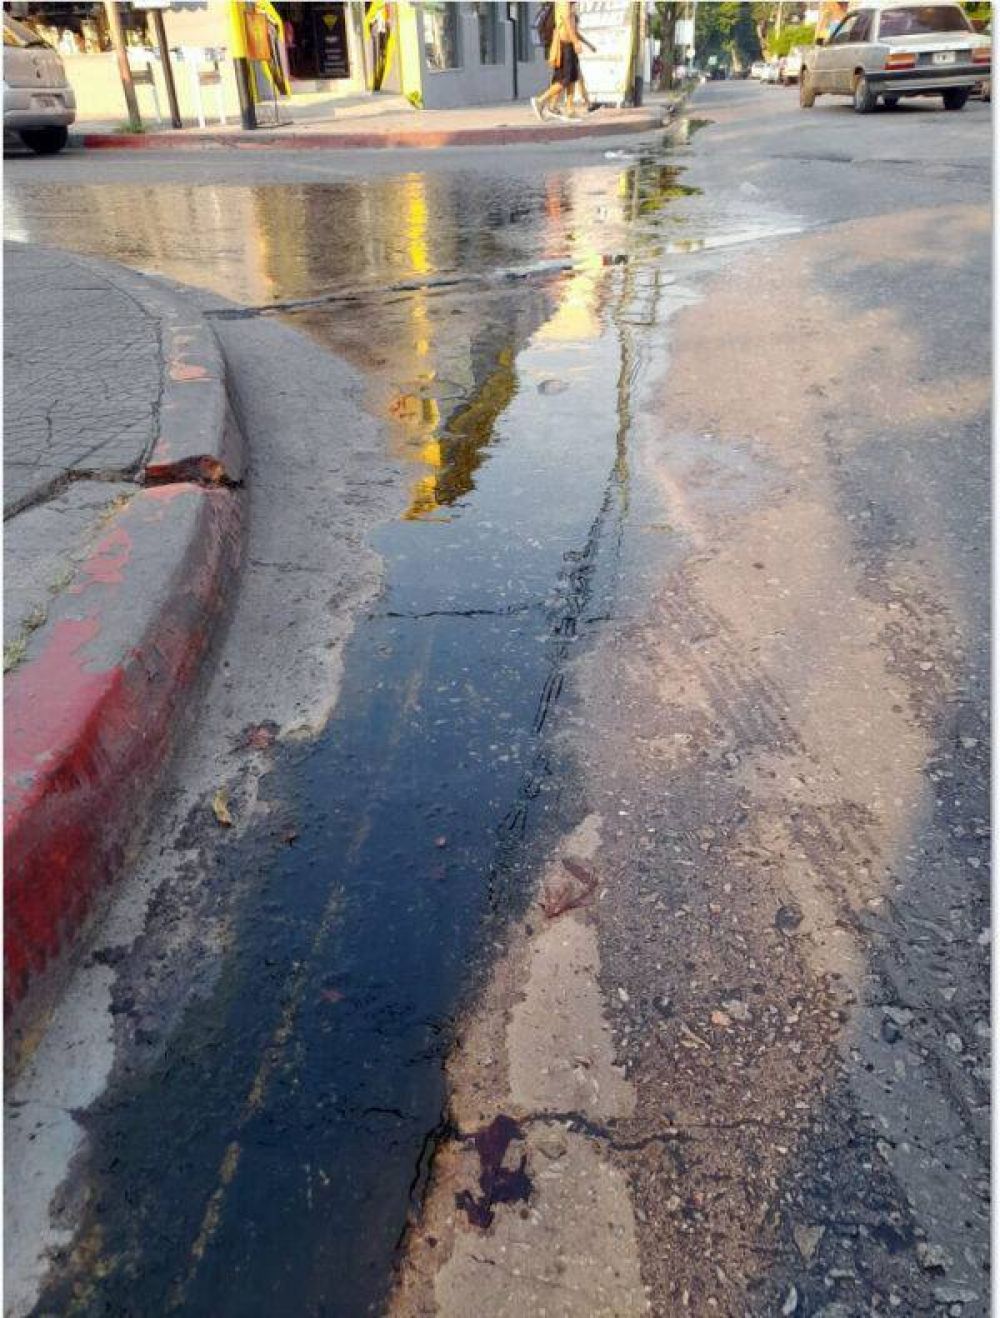 ZRATE EN PELIGRO: Muchas calles sin mantenimiento de la red de agua corriente que fluyen generando verdn y serios accidentes